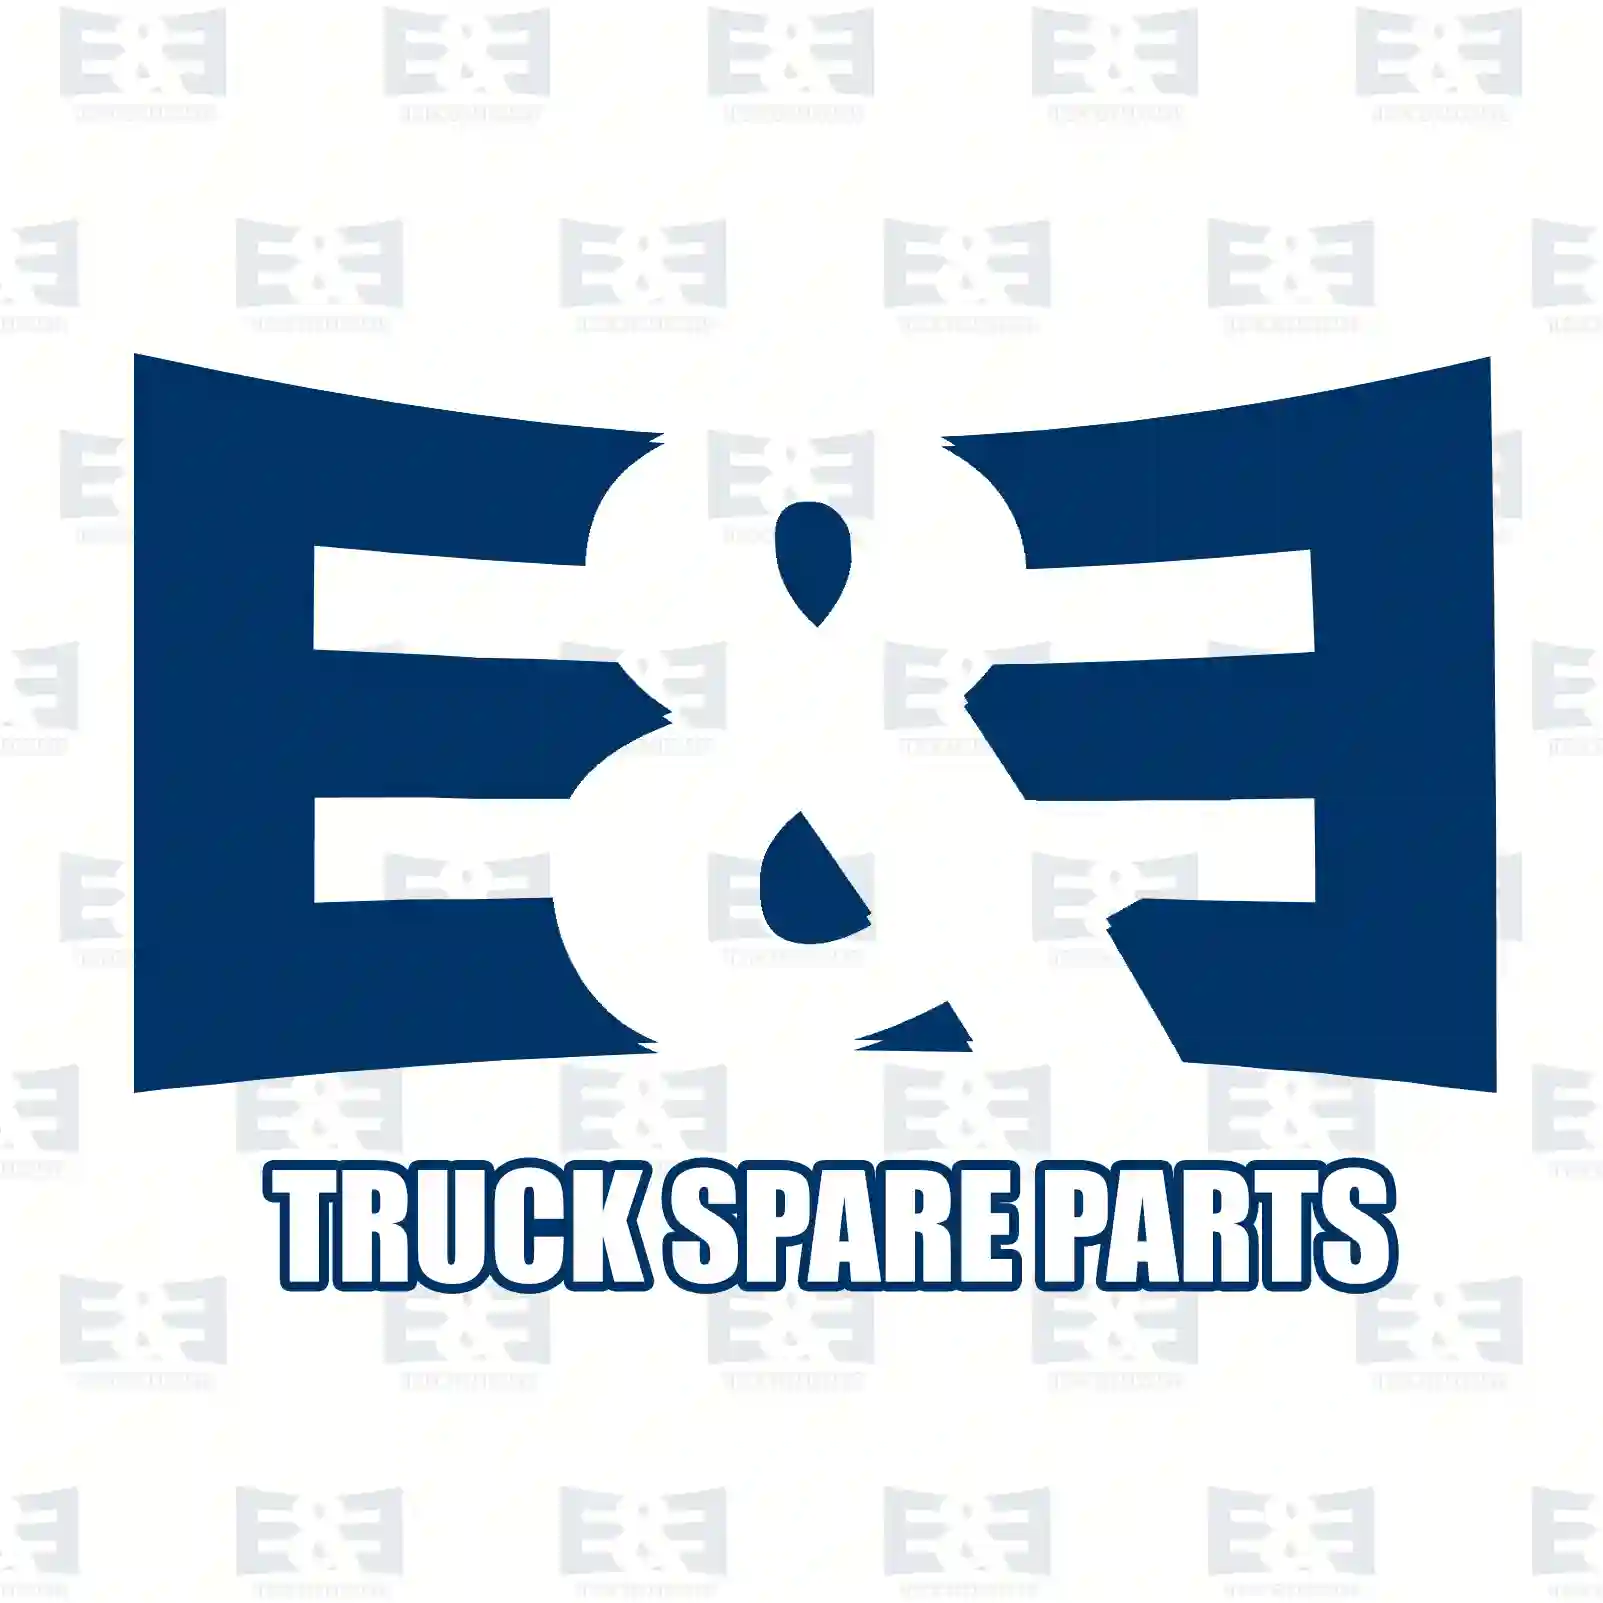 Repair kit, split cylinder, 2E2277821, 270608, 270609, 270610, 271197, 271198, 276813, 3094518 ||  2E2277821 E&E Truck Spare Parts | Truck Spare Parts, Auotomotive Spare Parts Repair kit, split cylinder, 2E2277821, 270608, 270609, 270610, 271197, 271198, 276813, 3094518 ||  2E2277821 E&E Truck Spare Parts | Truck Spare Parts, Auotomotive Spare Parts